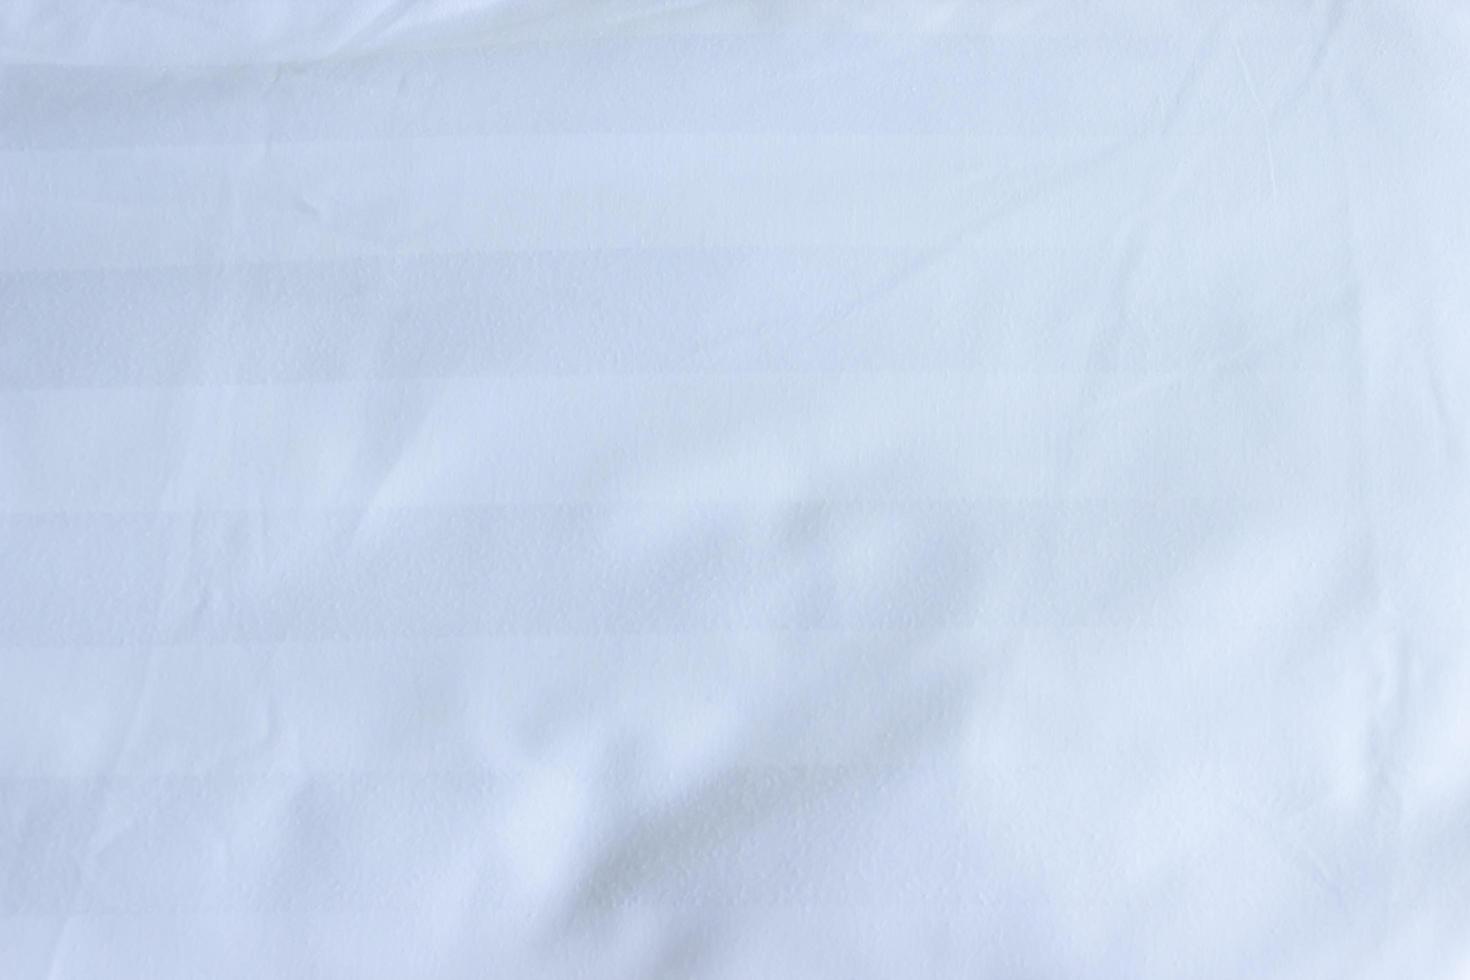 wit laken voor textuur of achtergrond foto